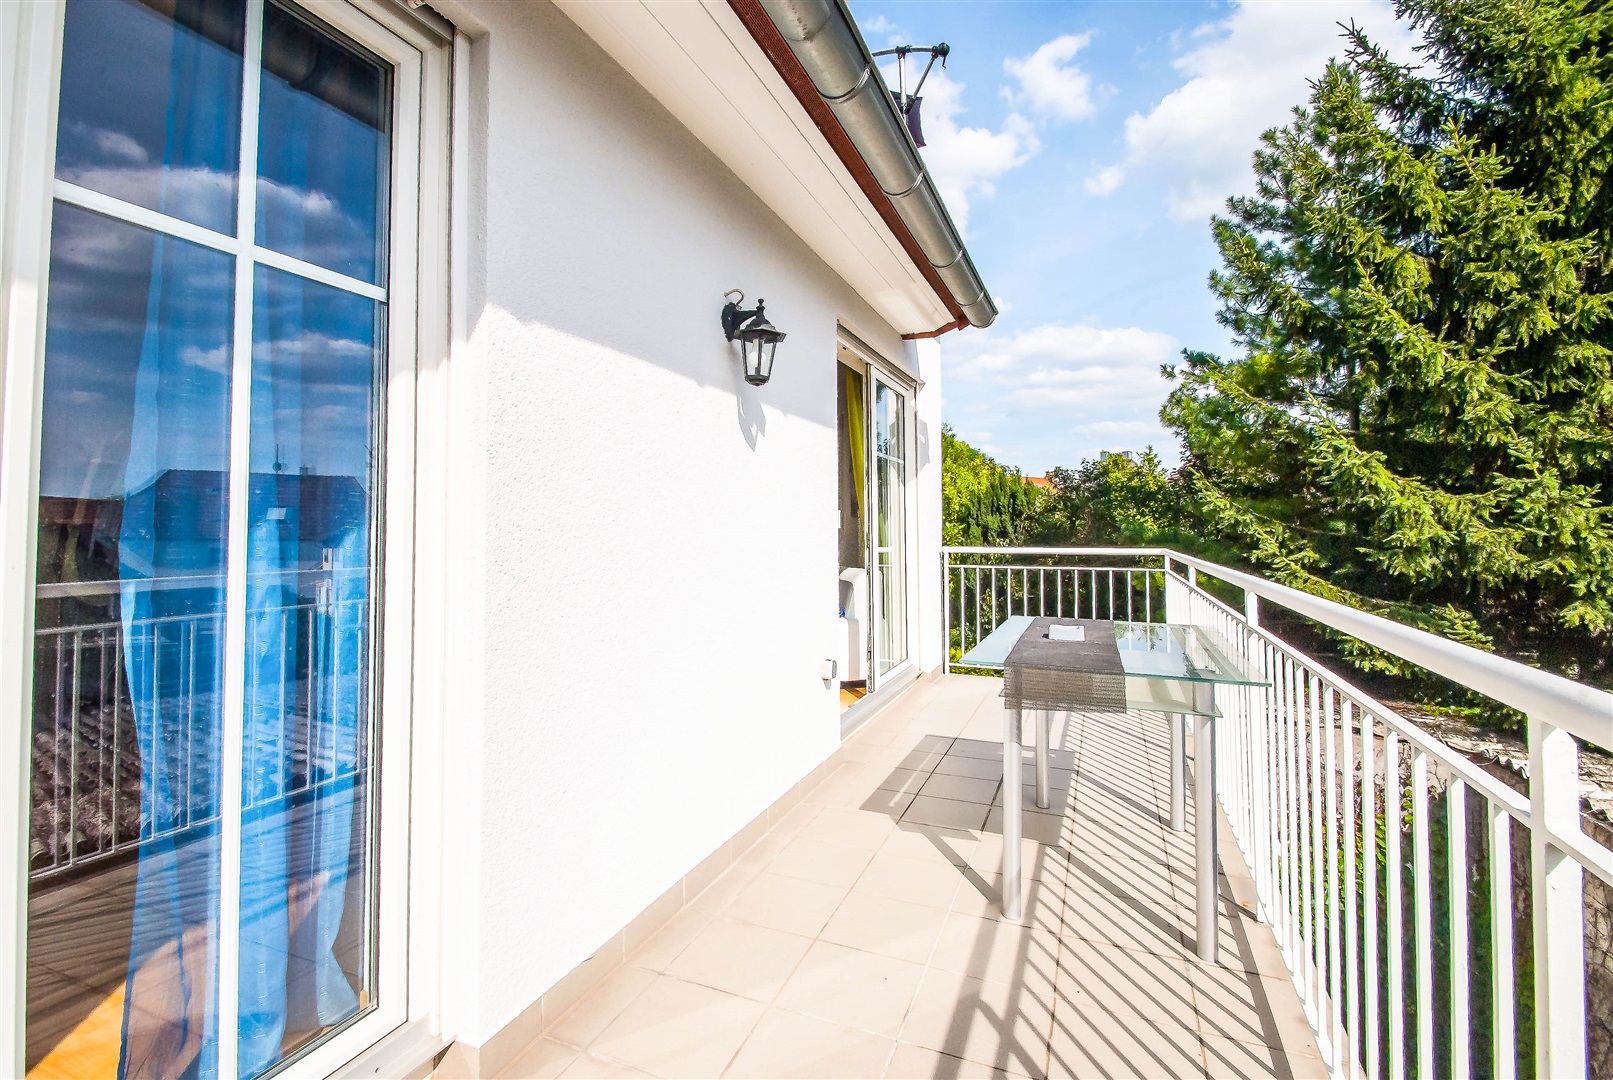 Weiträumiger Balkon der Wohnung mit schönen Platten verlegt und Blick ins Grüne - Oliver Reifferscheid - Immobilienmakler Darmstadt